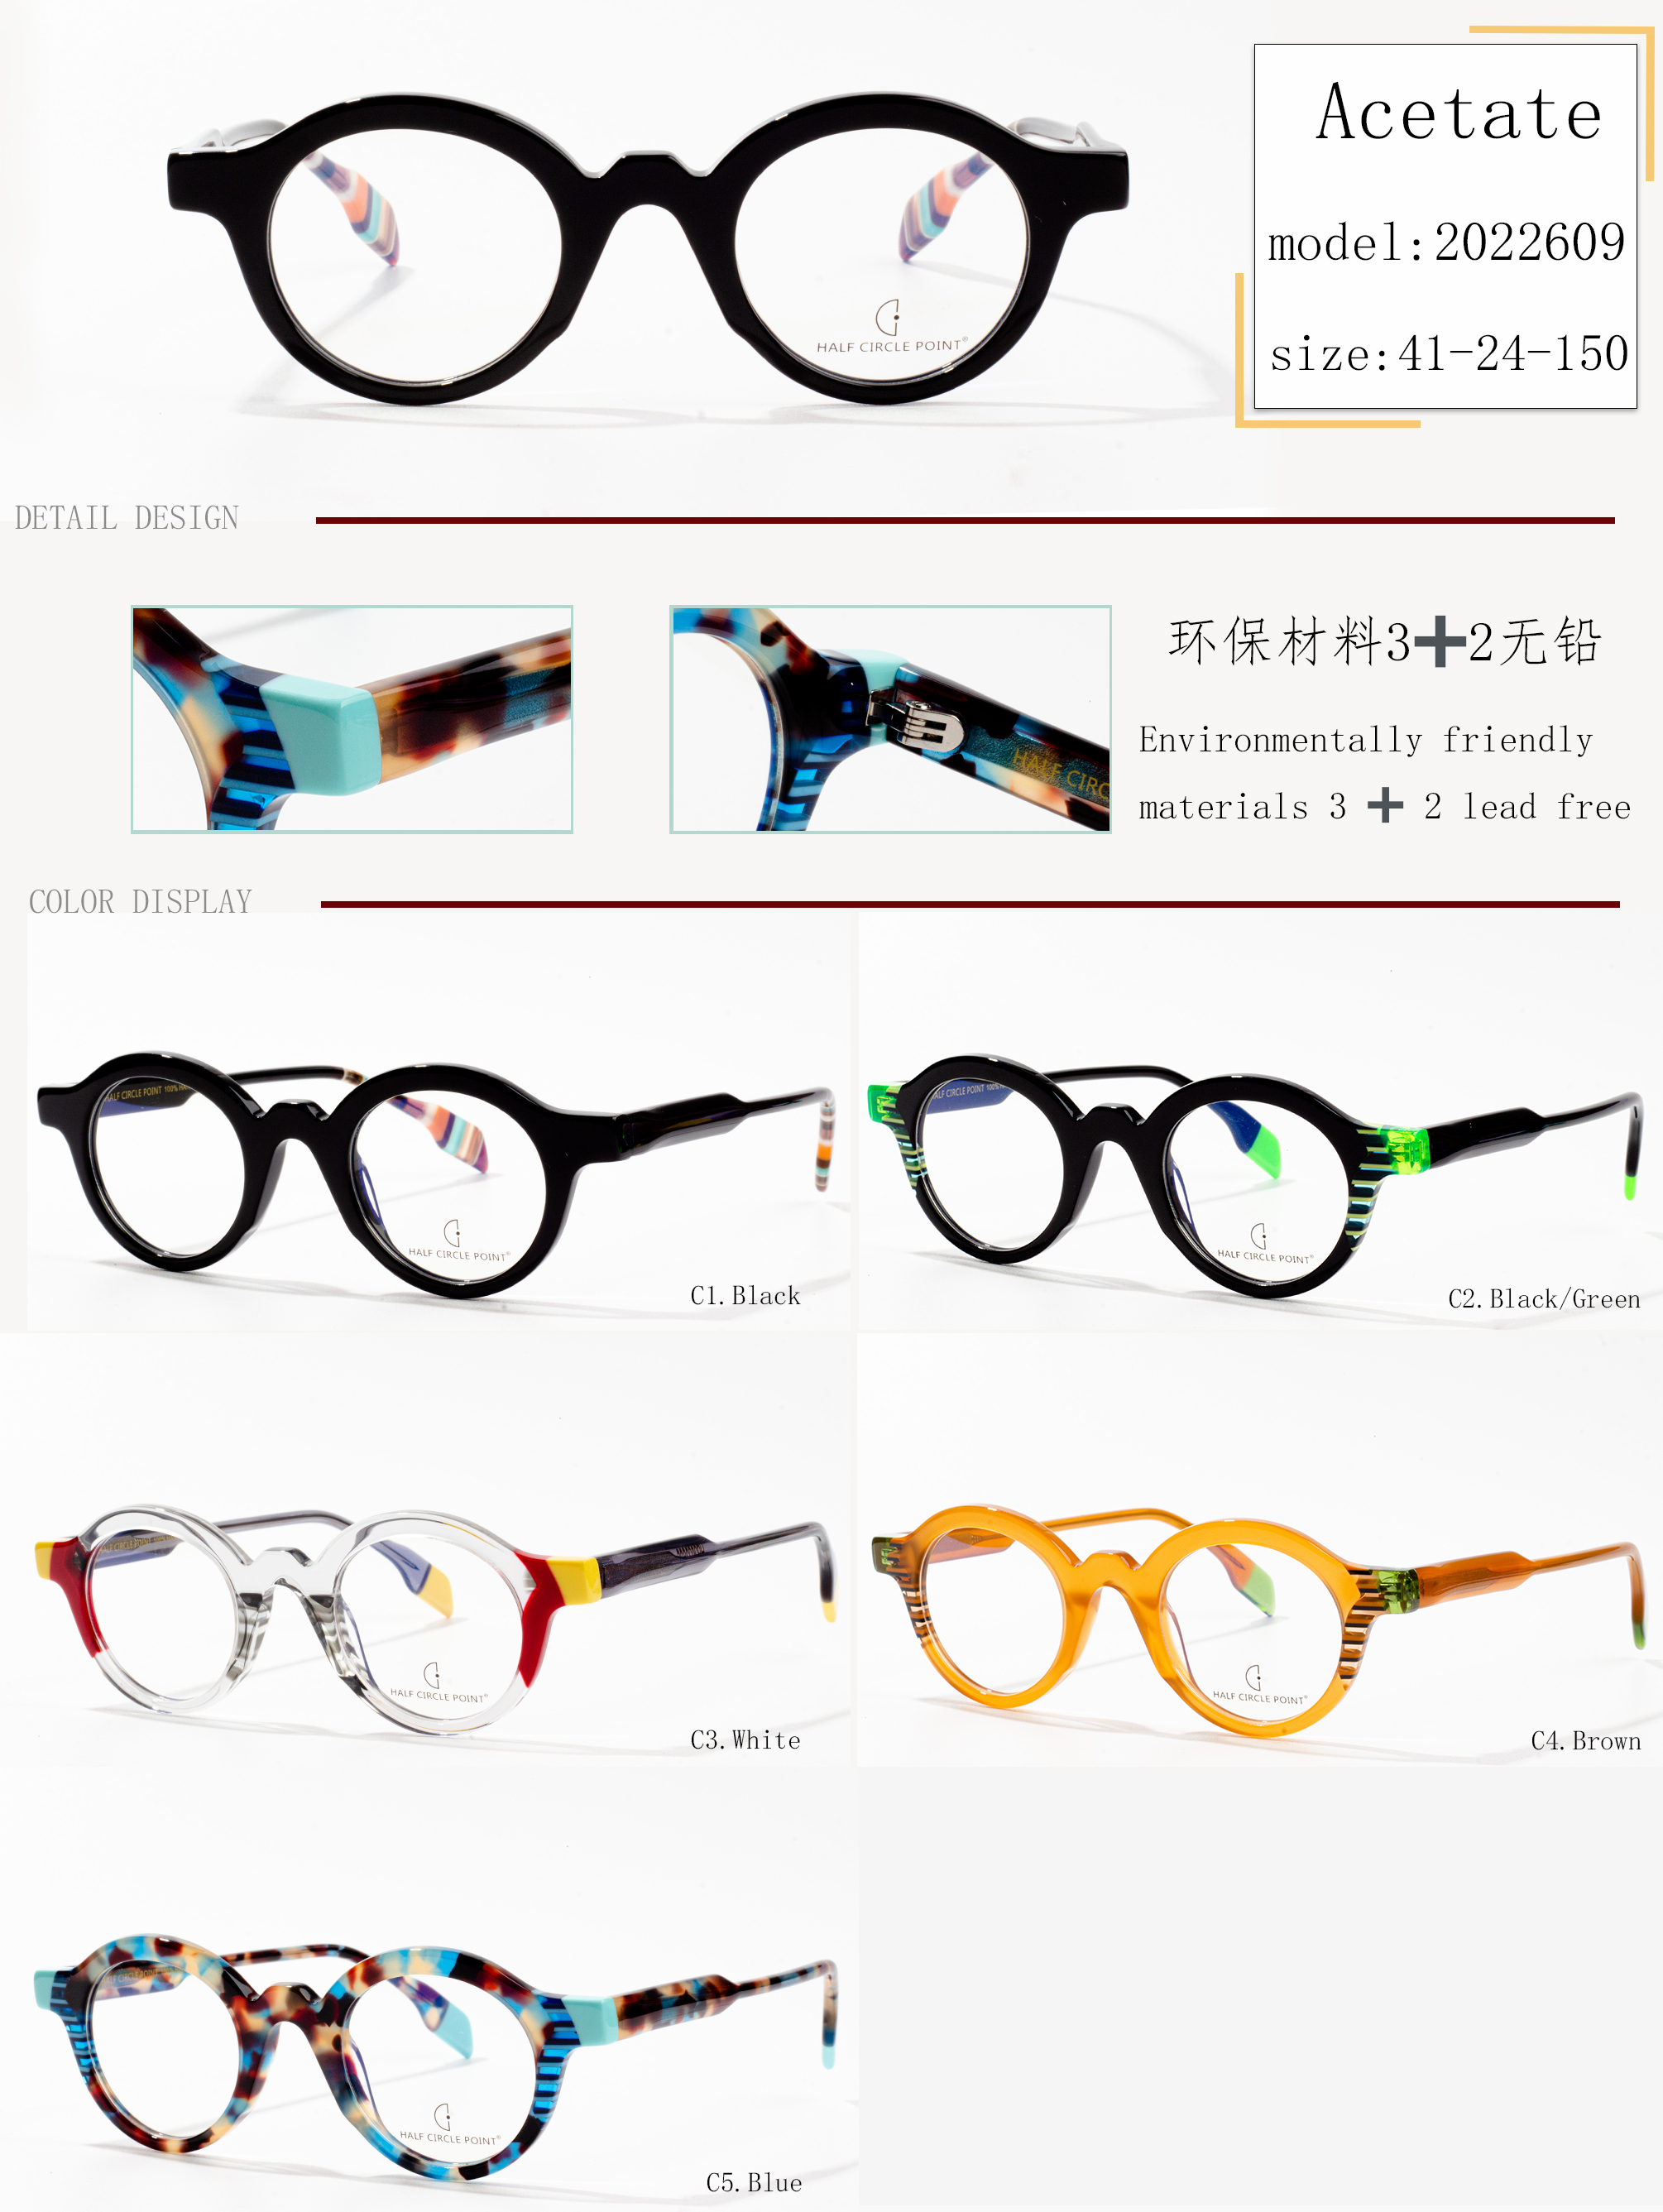 montatura per occhiali in acetato